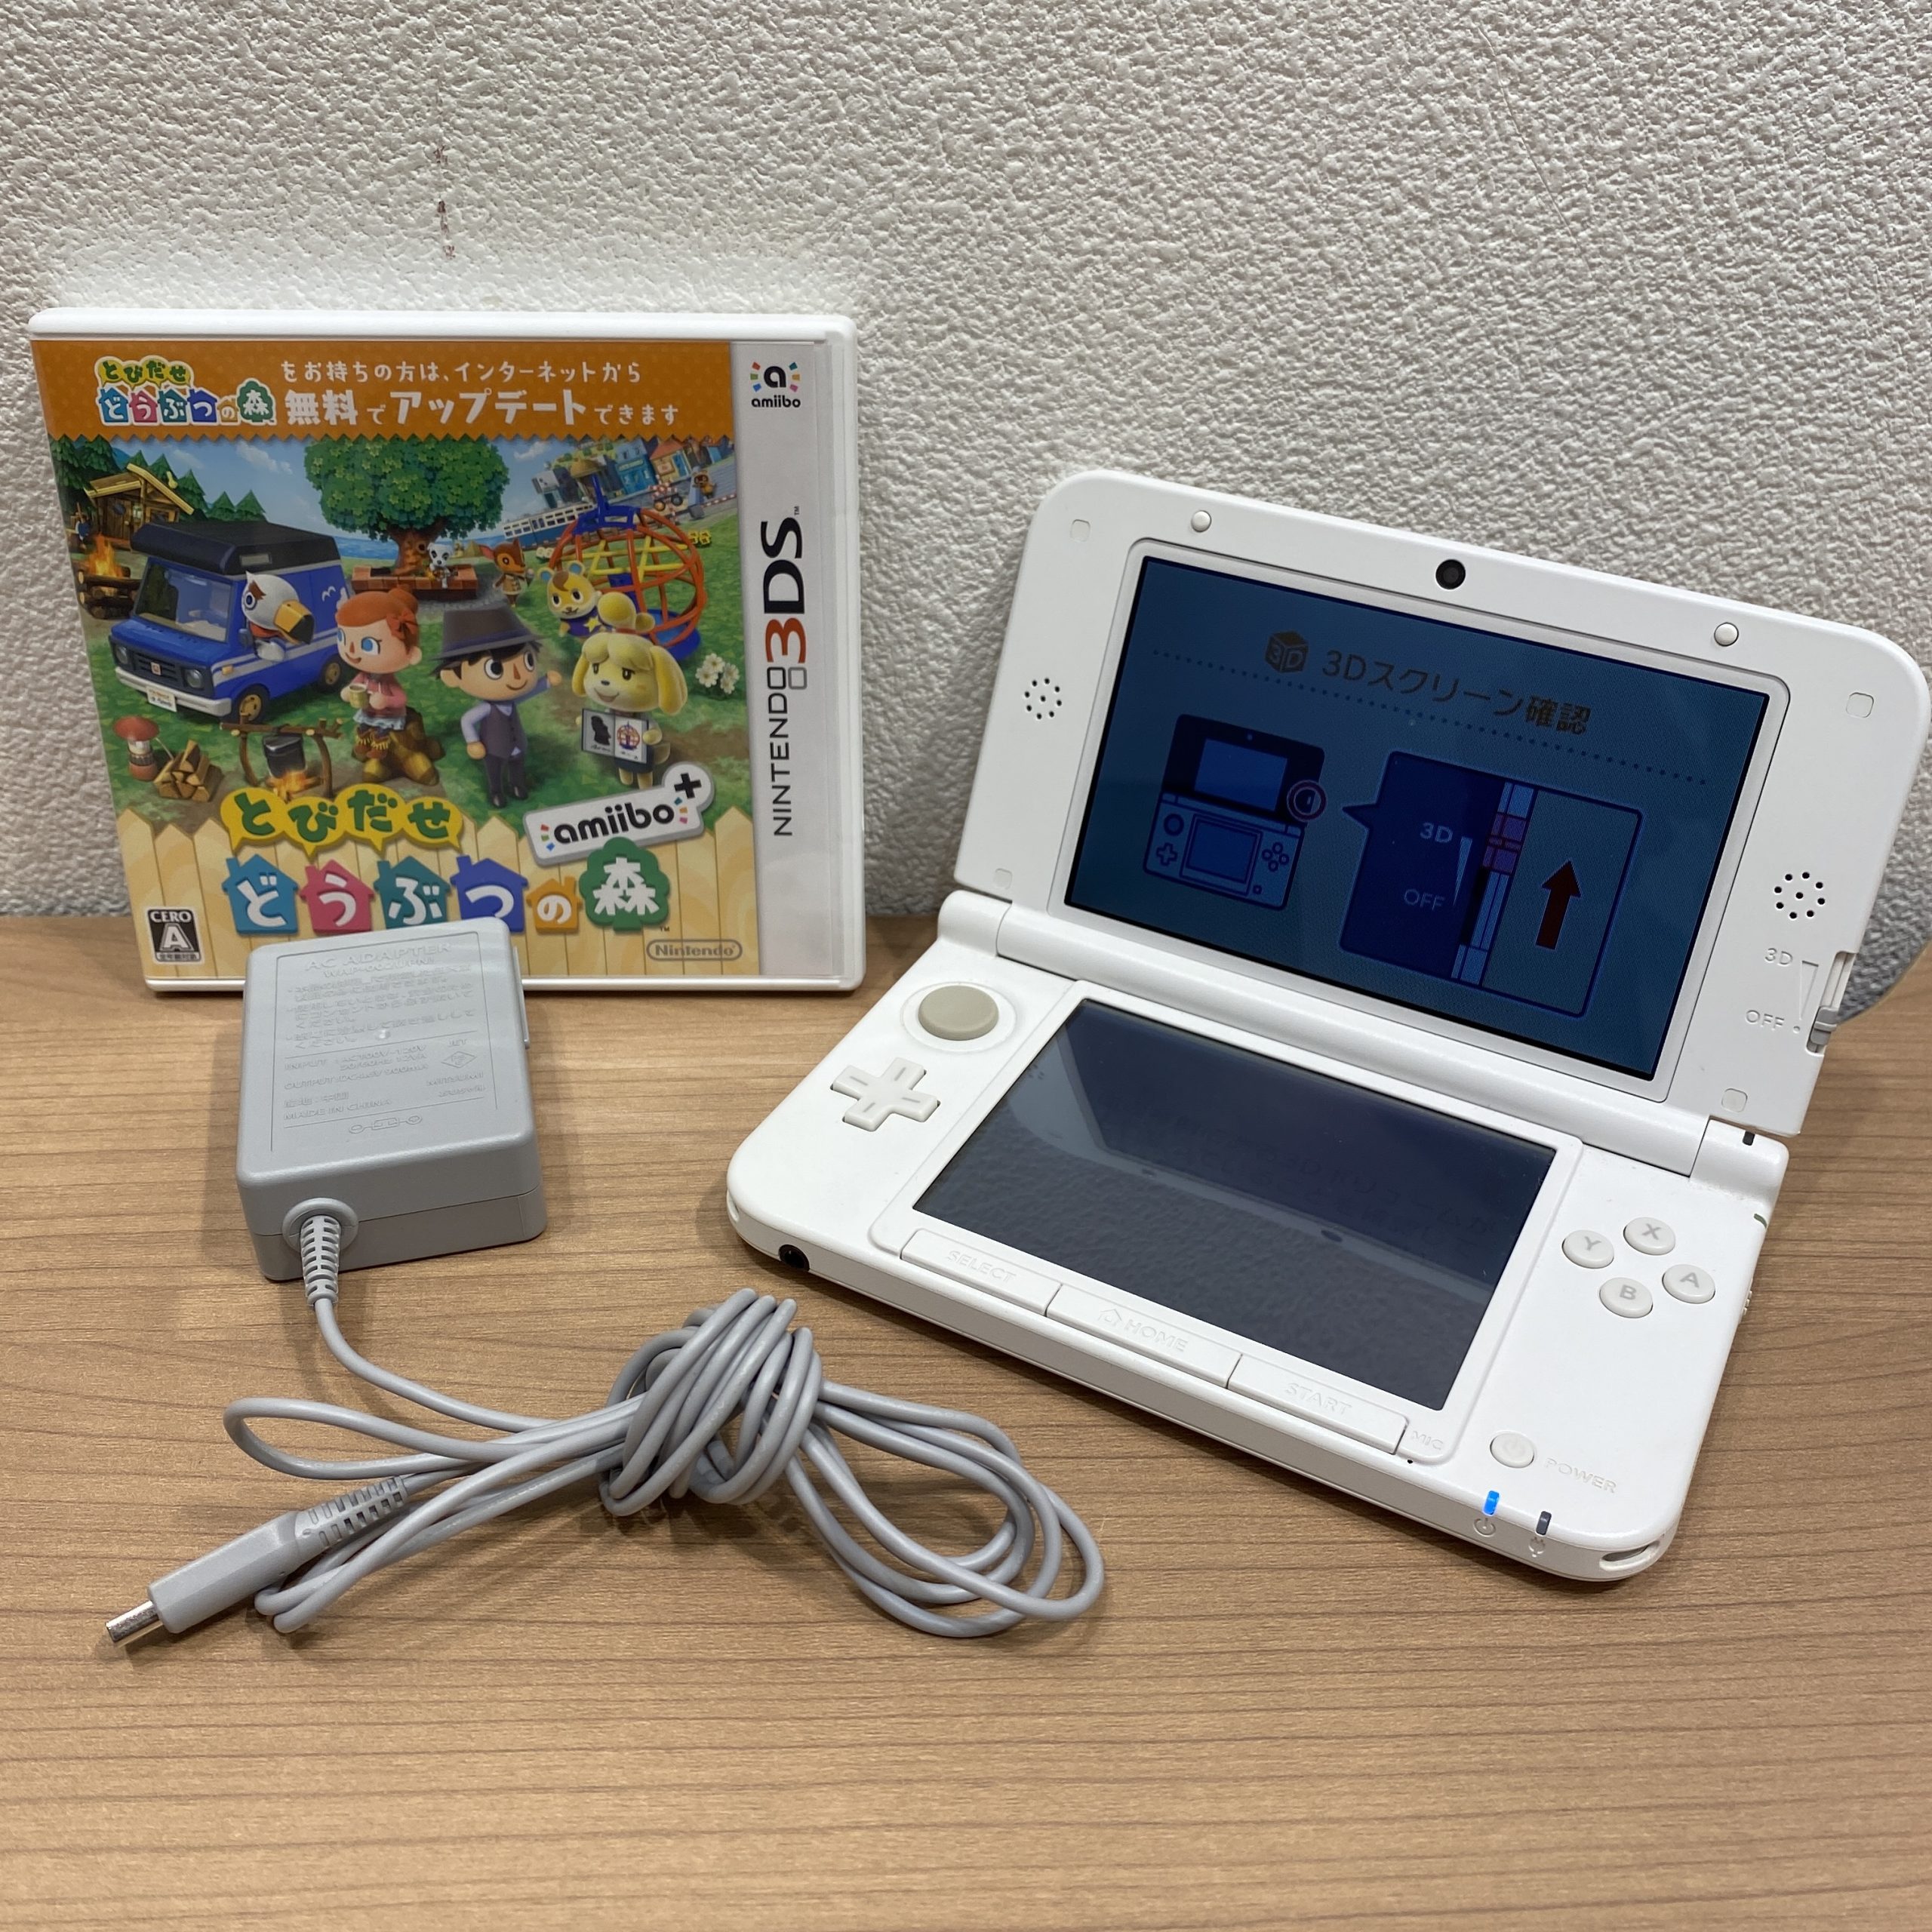 【NINTENDO/ニンテンドー/任天堂】3DS 本体 ホワイト とびだせどうぶつの森 カセット付き